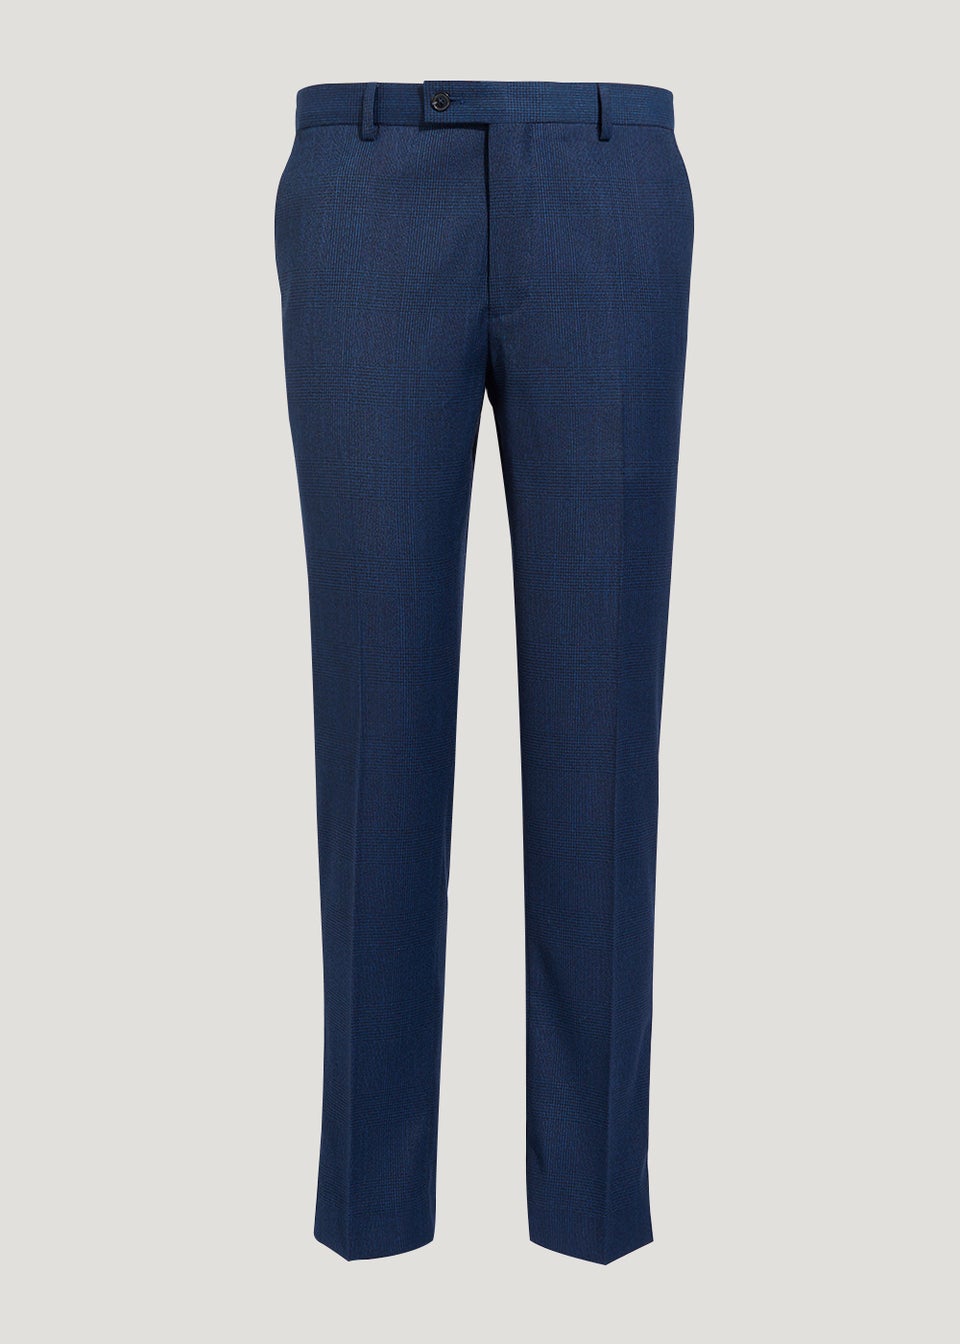 Taylor & Wright Eliot Blue Slim Fit Suit Trousers